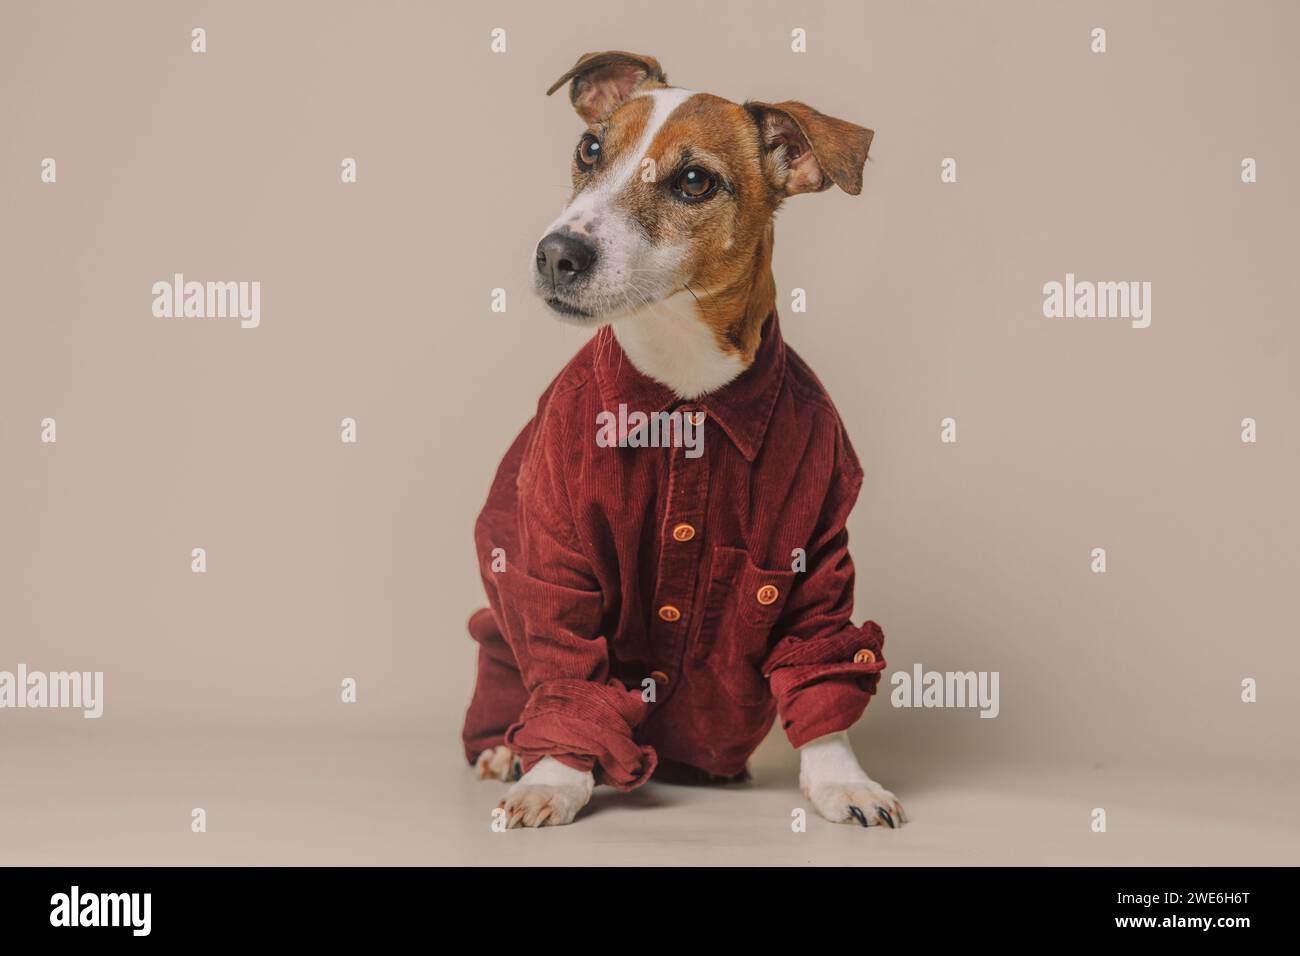 Niedlicher Jack Russell Terrier Hund trägt ein burgunderrotes Hemd vor beigem Hintergrund Stockfoto